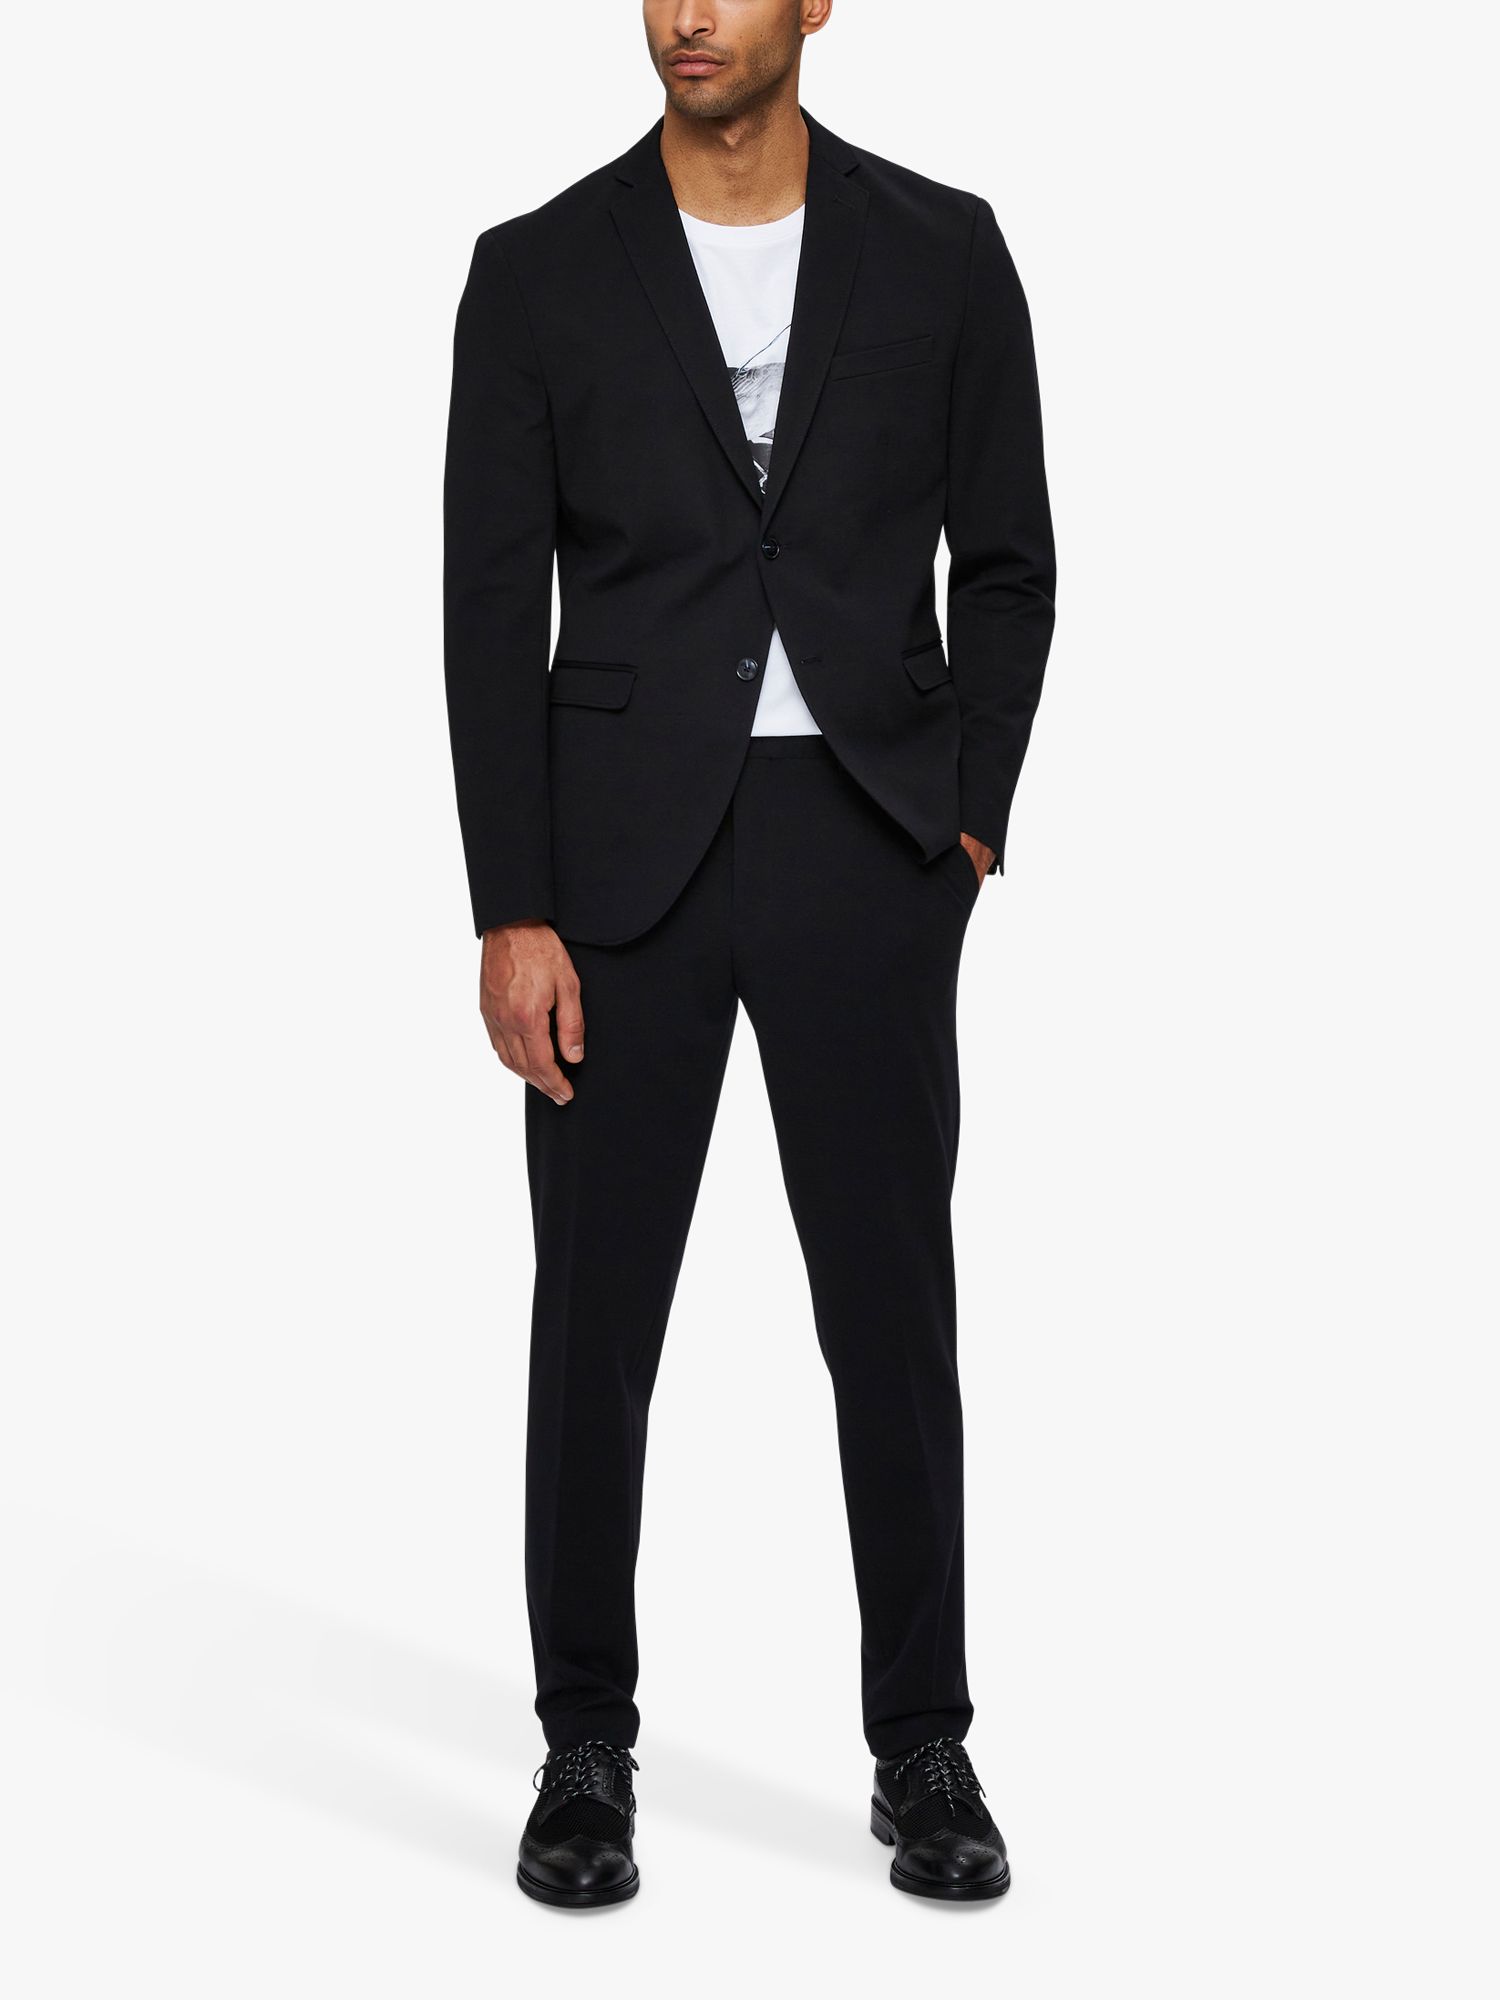 SELECTED HOMME Regular Fit Suit Jacket, Black, 38R